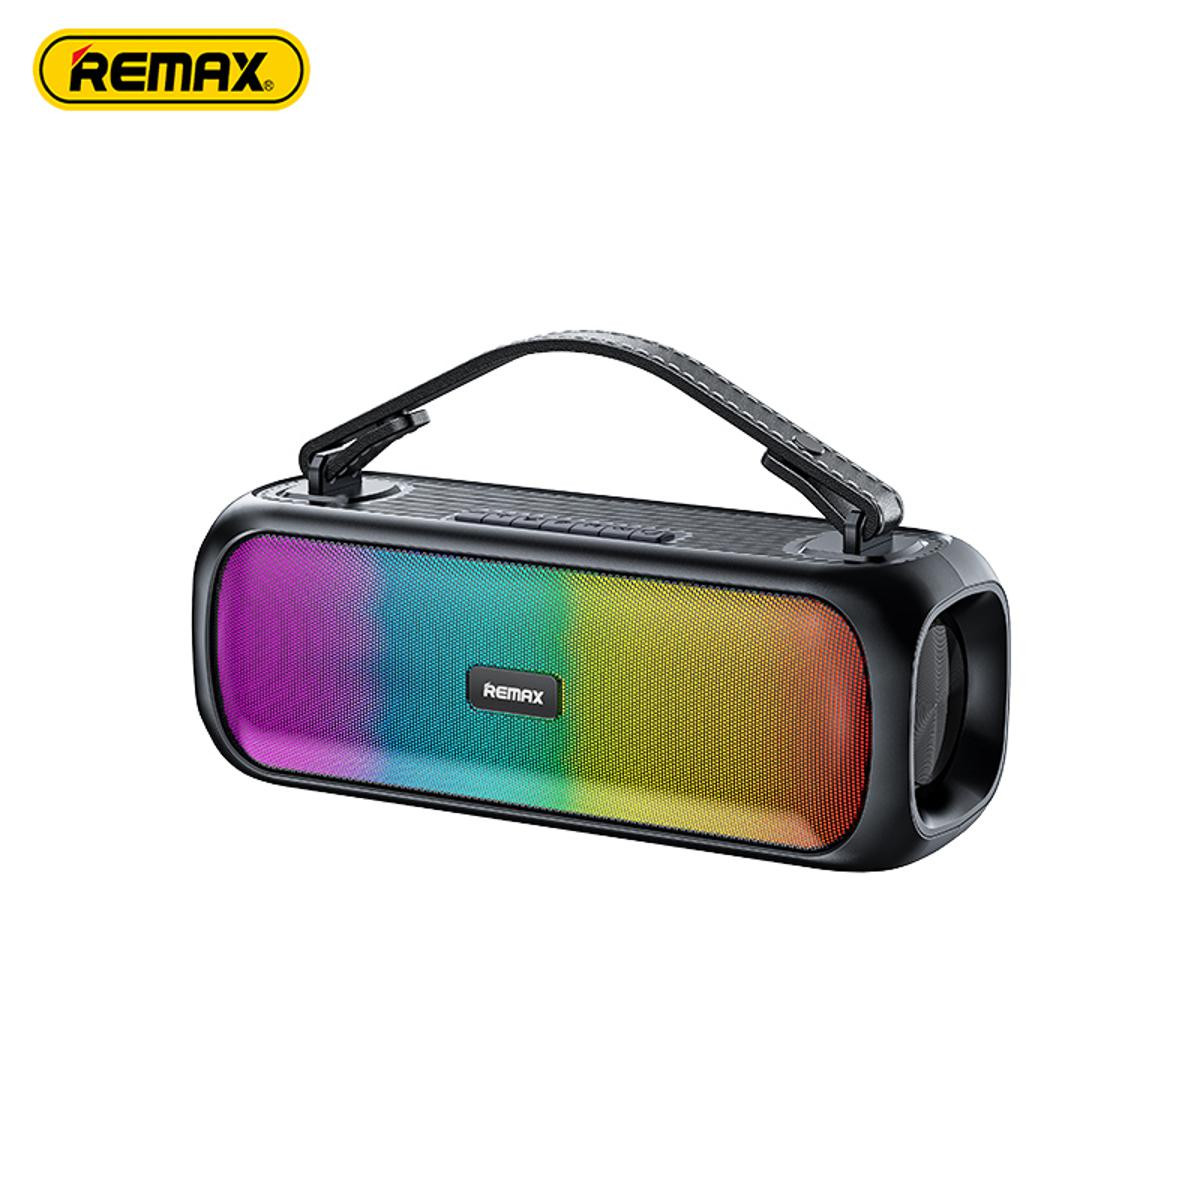 REMAX RB-M25 Waterproof Outdoor RGB Bluetooth Speaker - Black